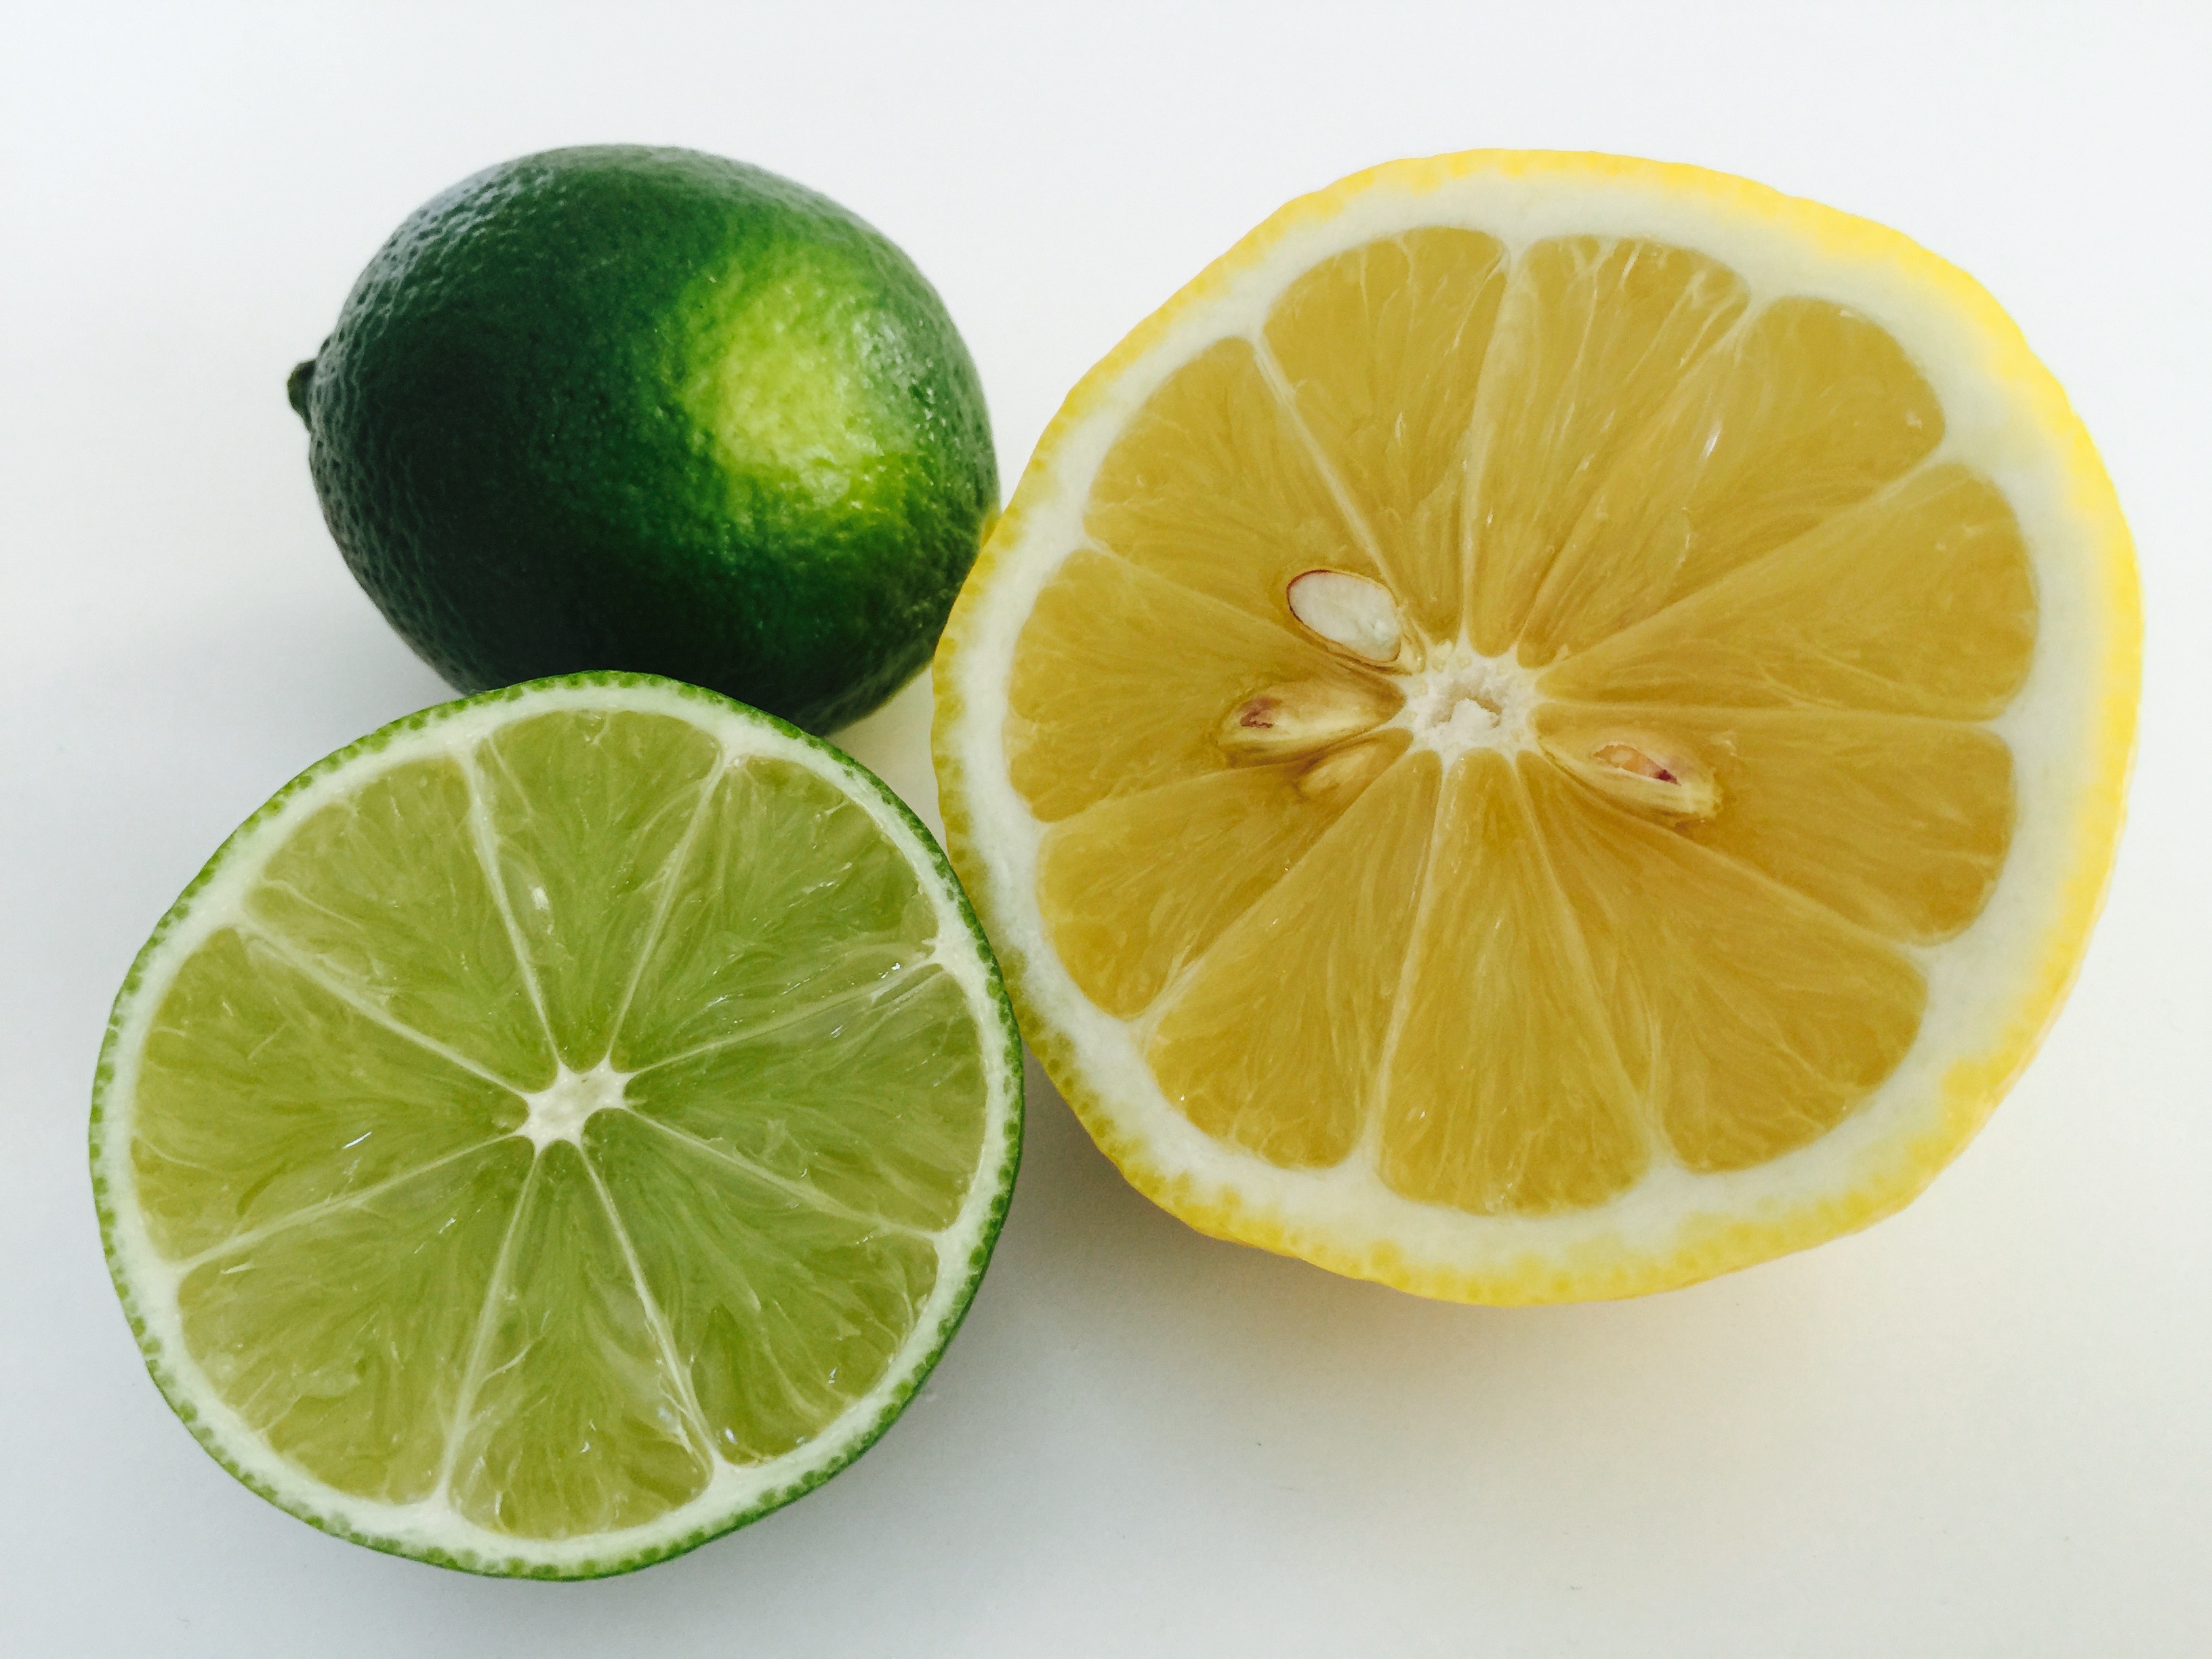 Čerstvé ovoce - Limeta a citrón